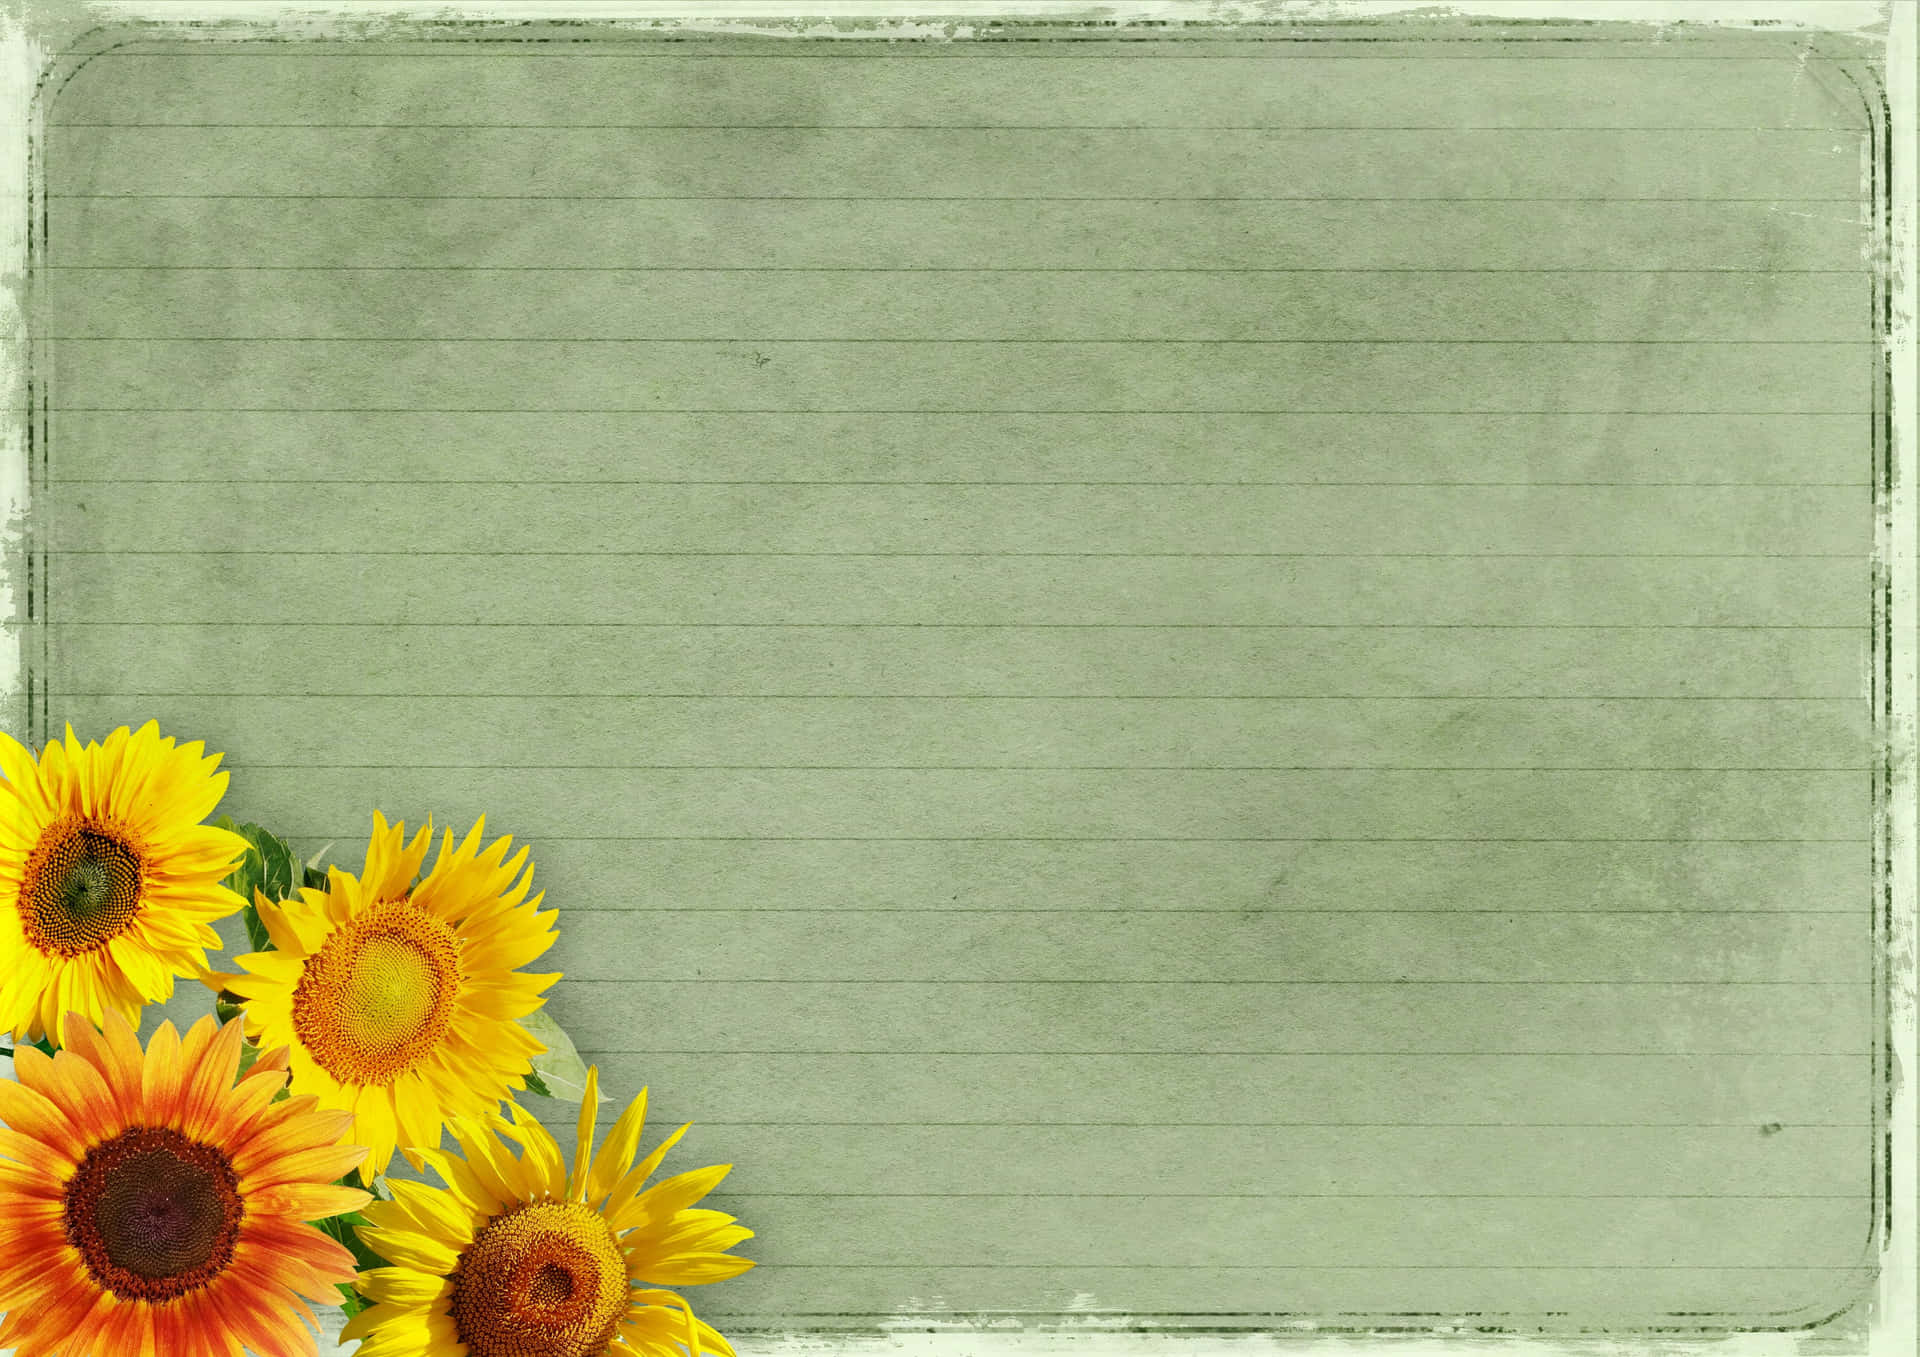 Sunflower Frame Lined Paper Background For Desktop